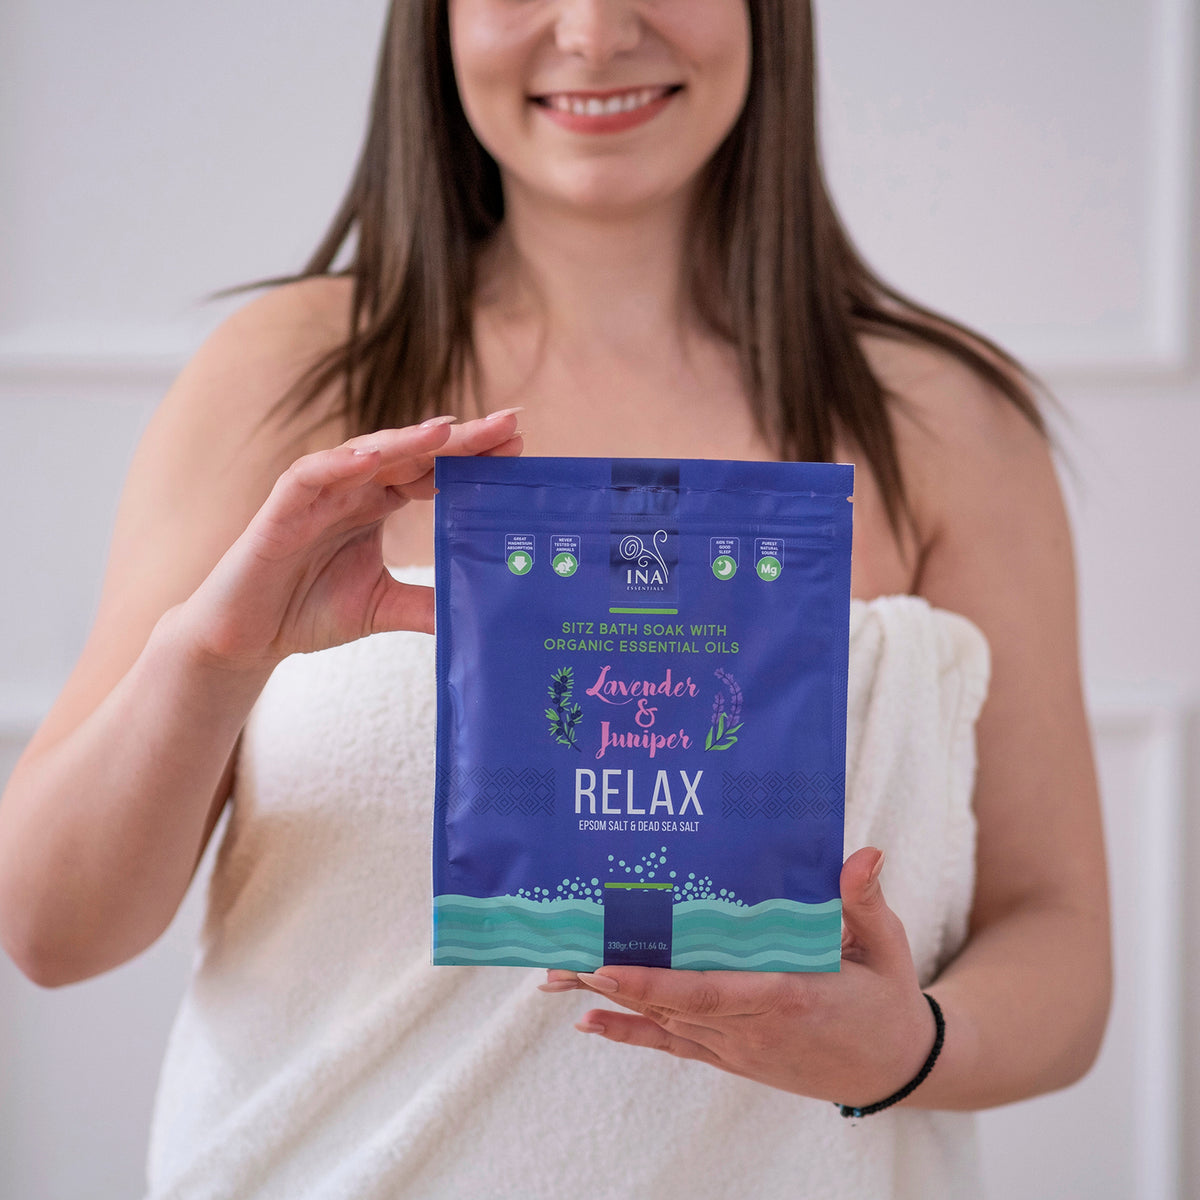 Relax - Sali da bagno con Lavanda e Ginepro per Relax e sollievo dallo Stress